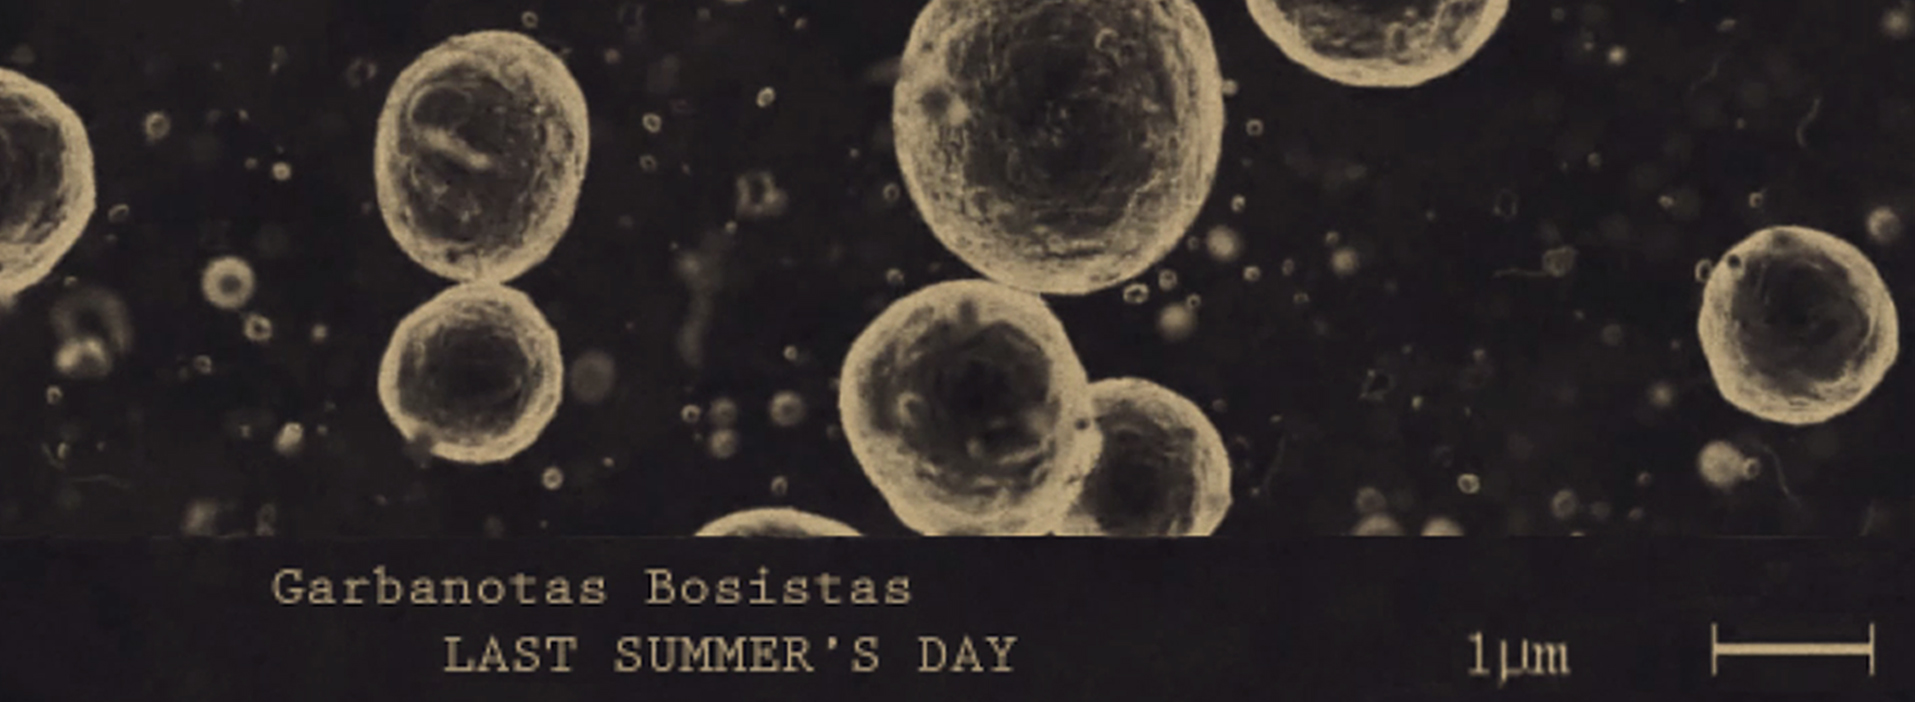  „Paskutinė vasaros diena“ („Last Summer's Day“) dainos muzikinis vaizdo įrašas | Rengėjų nuotr.